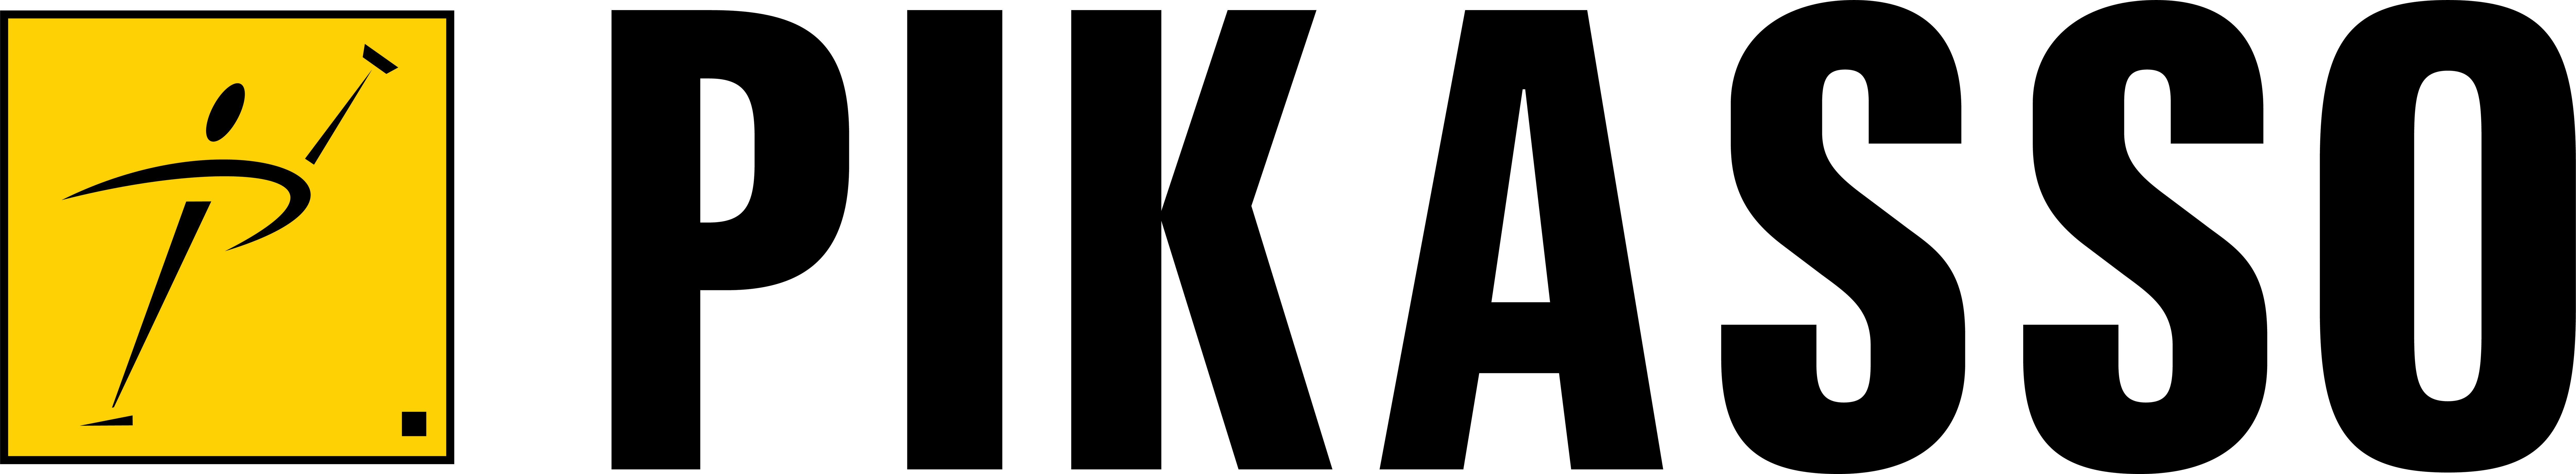 Pikasso-Logo original (1)